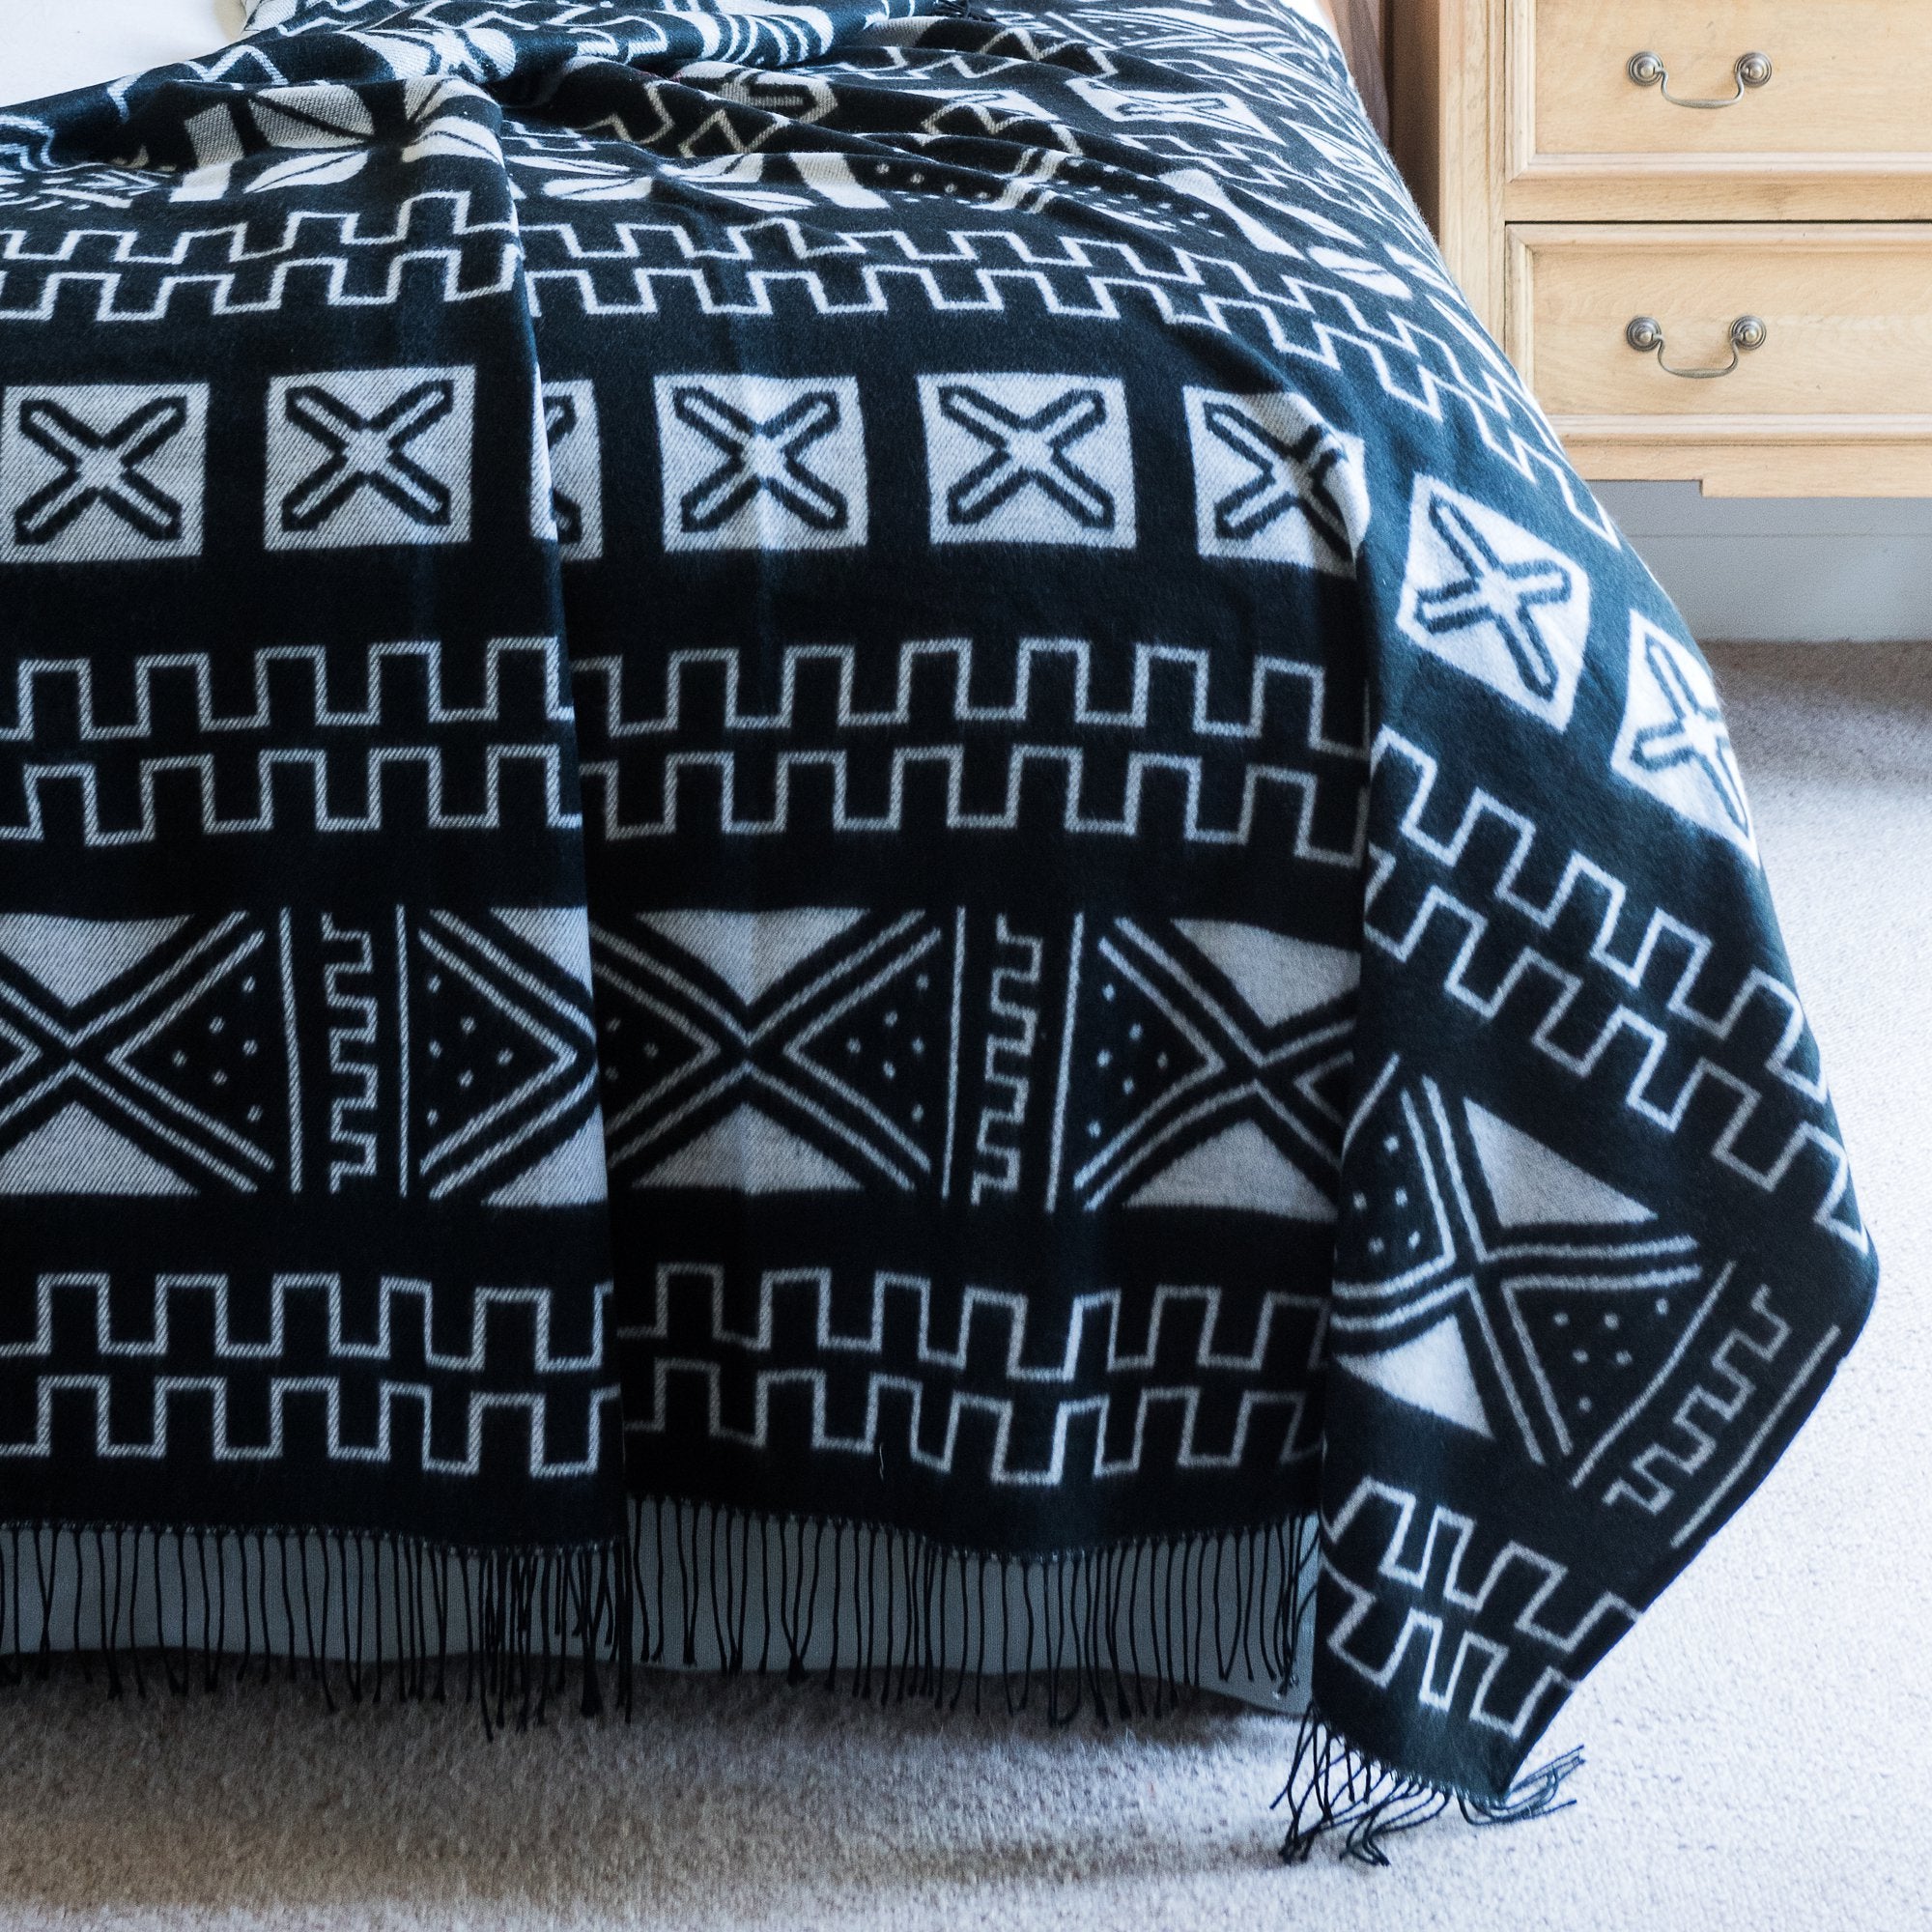 Accogliente coperta con motivo africano - Mali - 180 x 130 cm